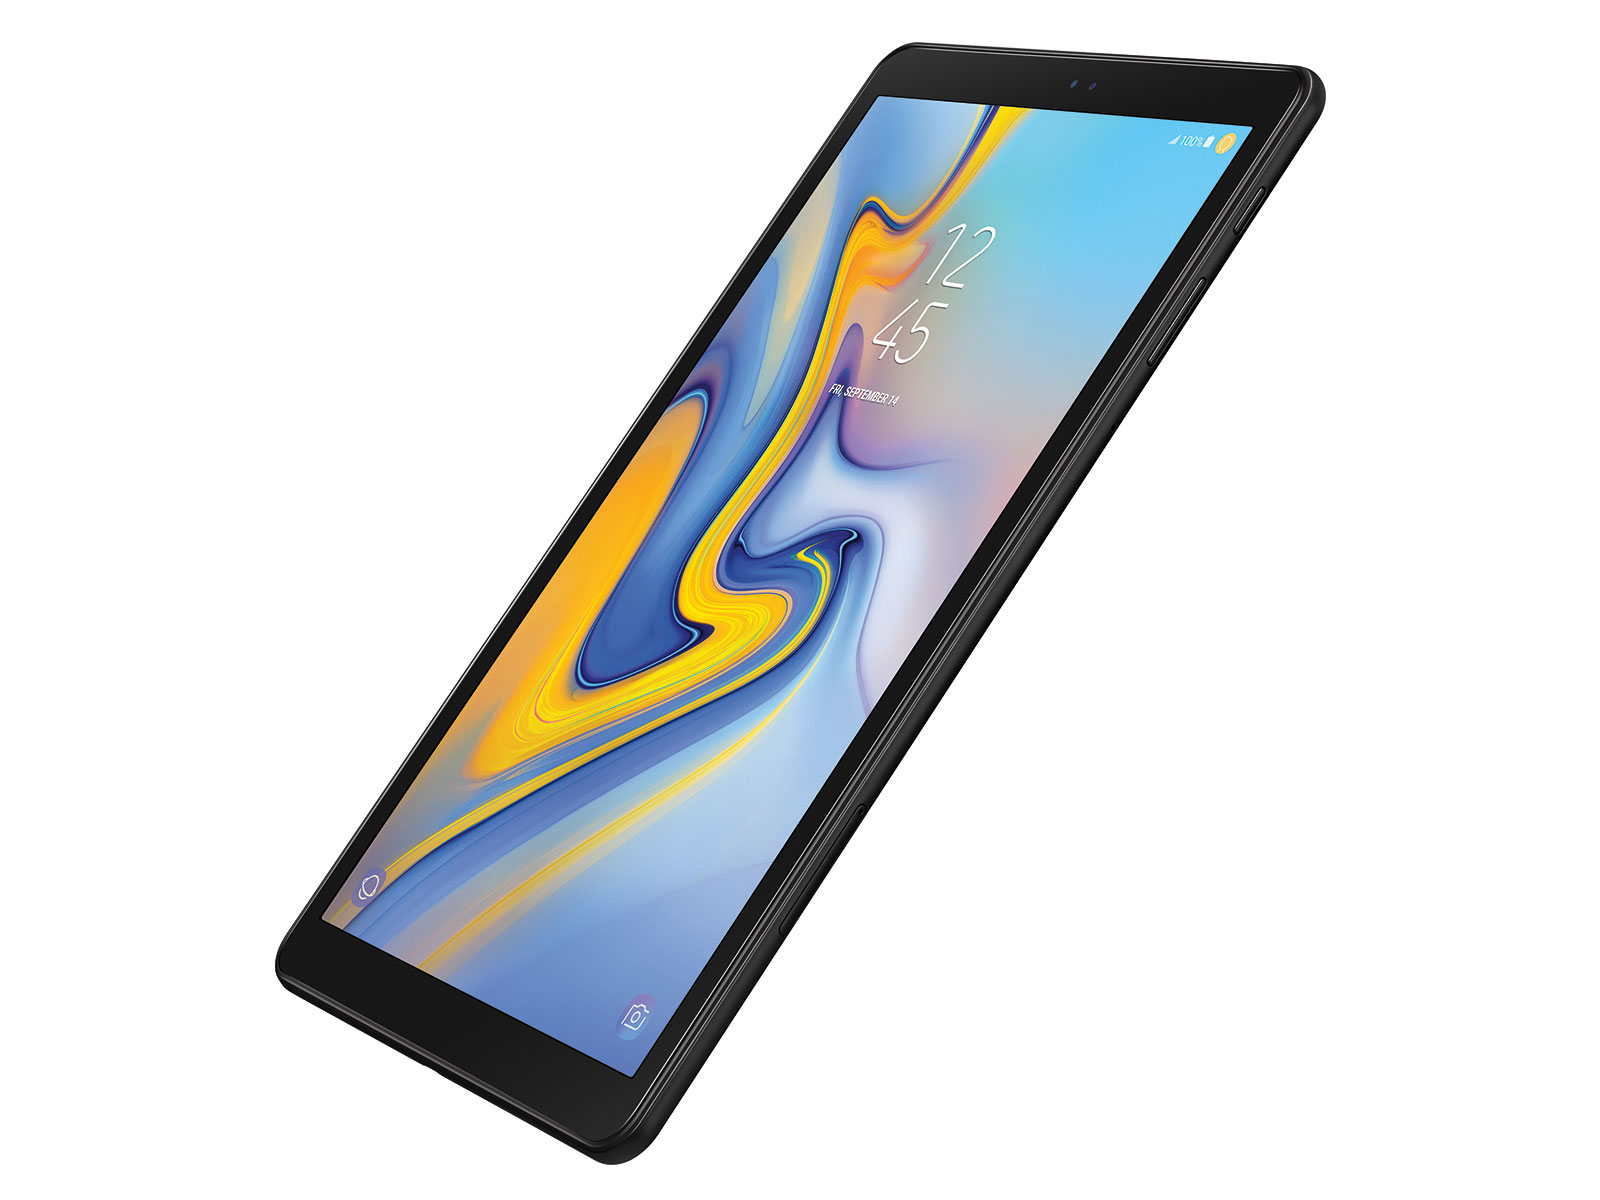 ondergeschikt Voorman Vliegveld Galaxy Tab A 10.5", Black Tablets - SM-T590NZKAXAR | Samsung US